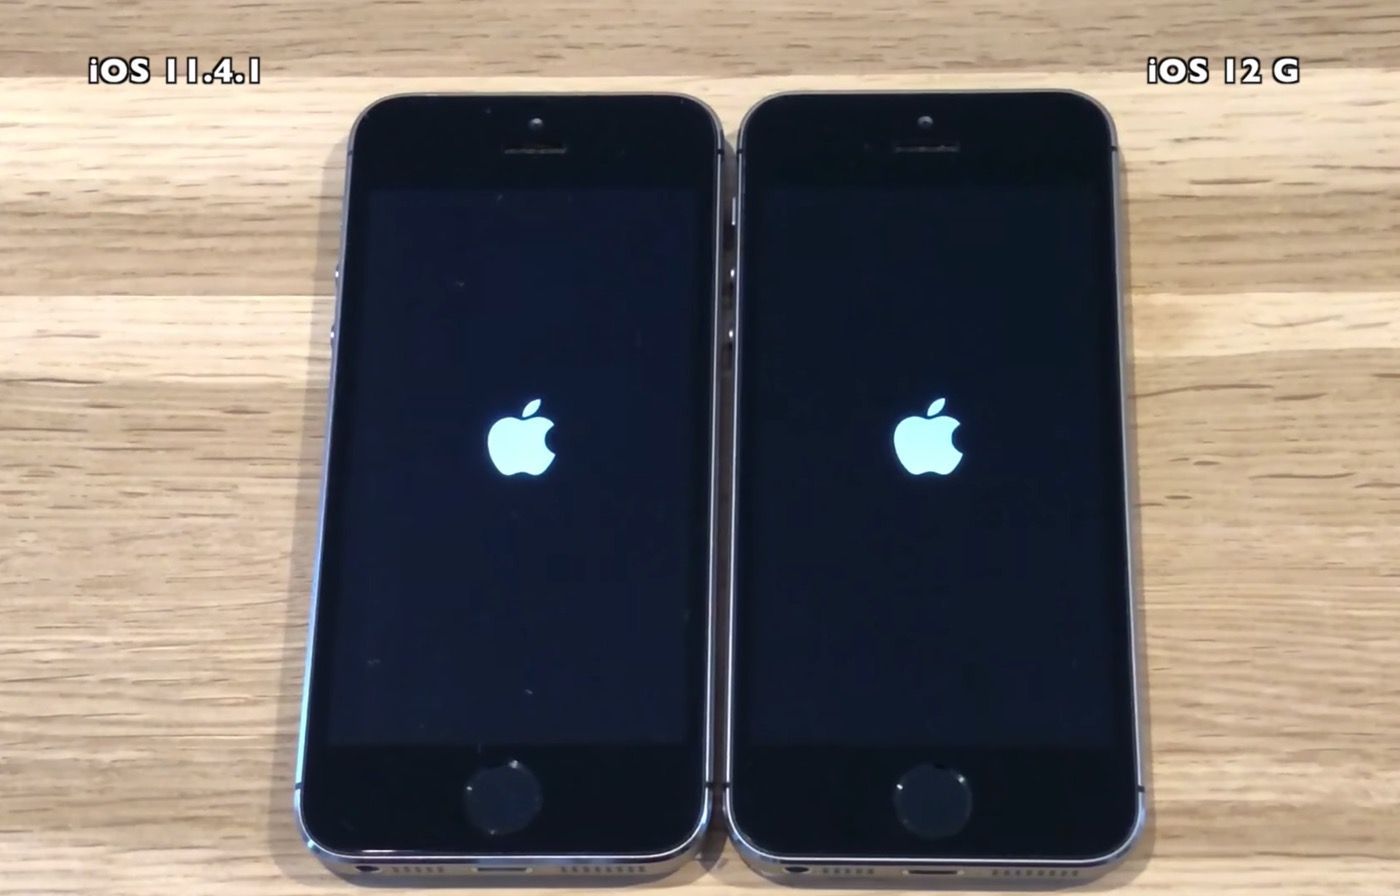 ｢iPhone 5s｣や｢iPhone 6｣といった旧モデルでの｢iOS 12 GM｣と｢iOS 11.4.1｣の動作比較テスト映像